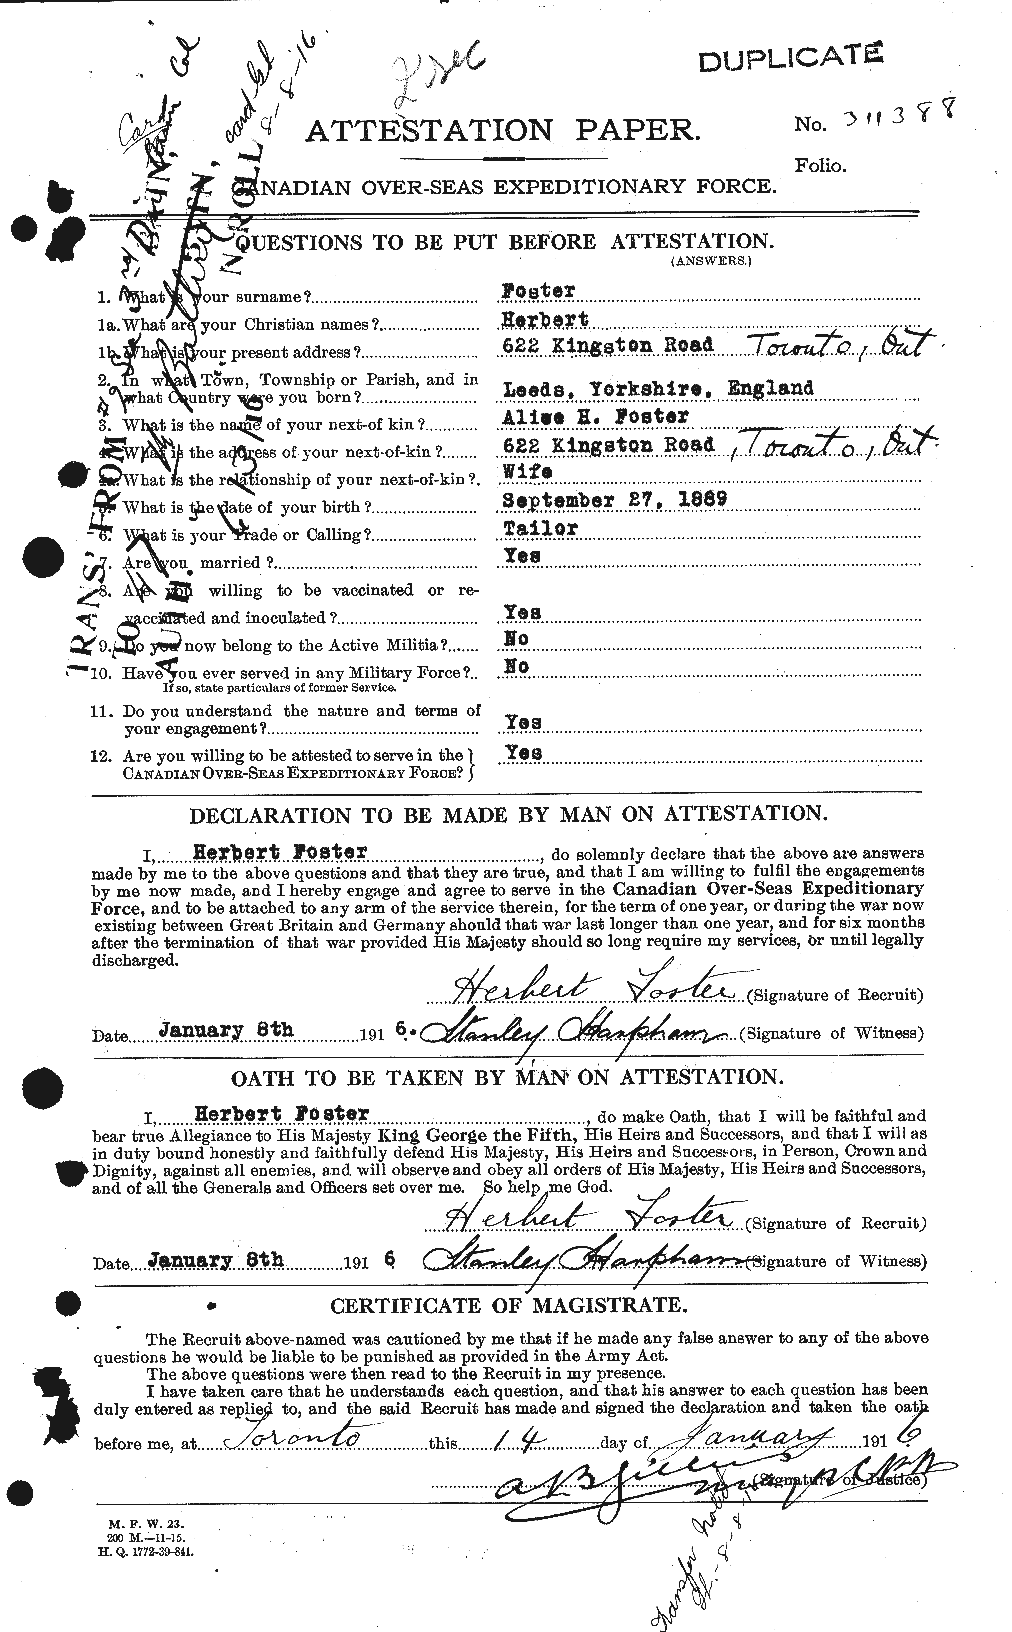 Dossiers du Personnel de la Première Guerre mondiale - CEC 333254a